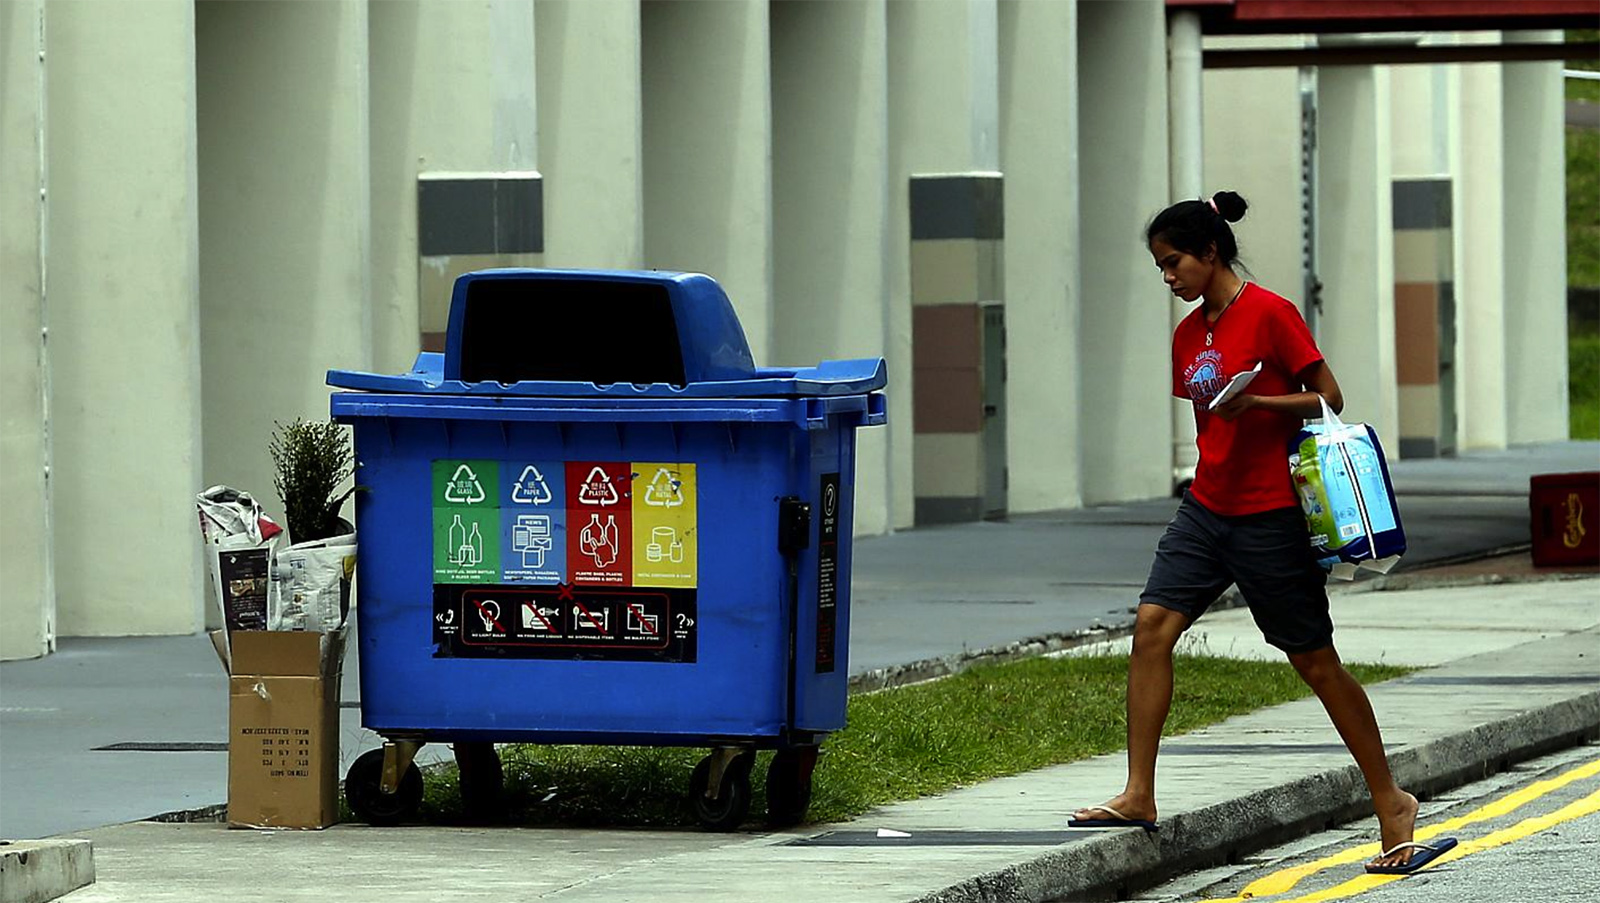 Thàng phân loại rác ở Singapore